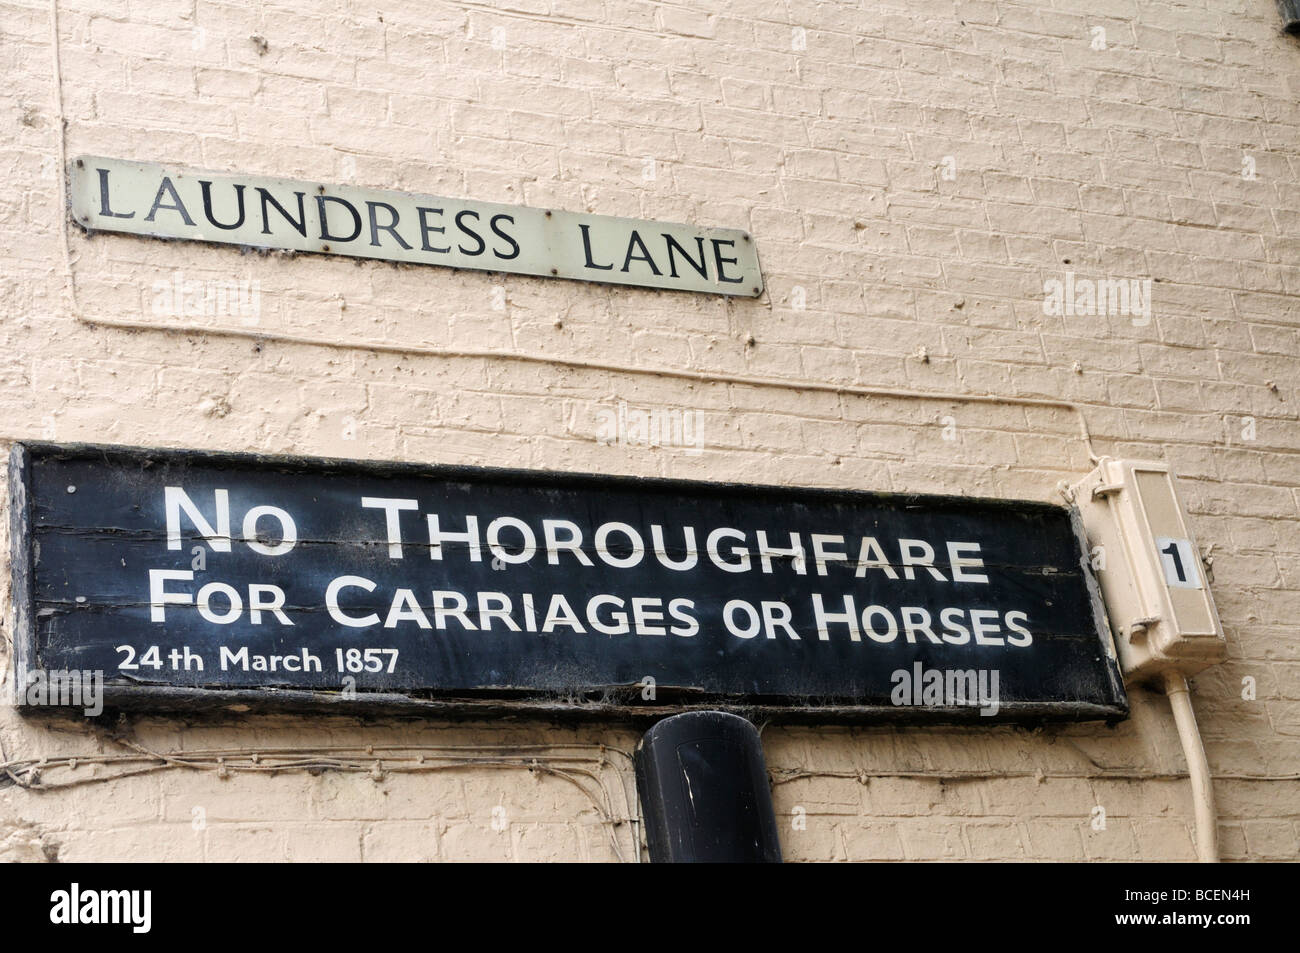 "Divieto di transito per i carri o cavalli 24 marzo 1857 preavviso lavandaia Lane, Cambridge Inghilterra Regno Unito Foto Stock